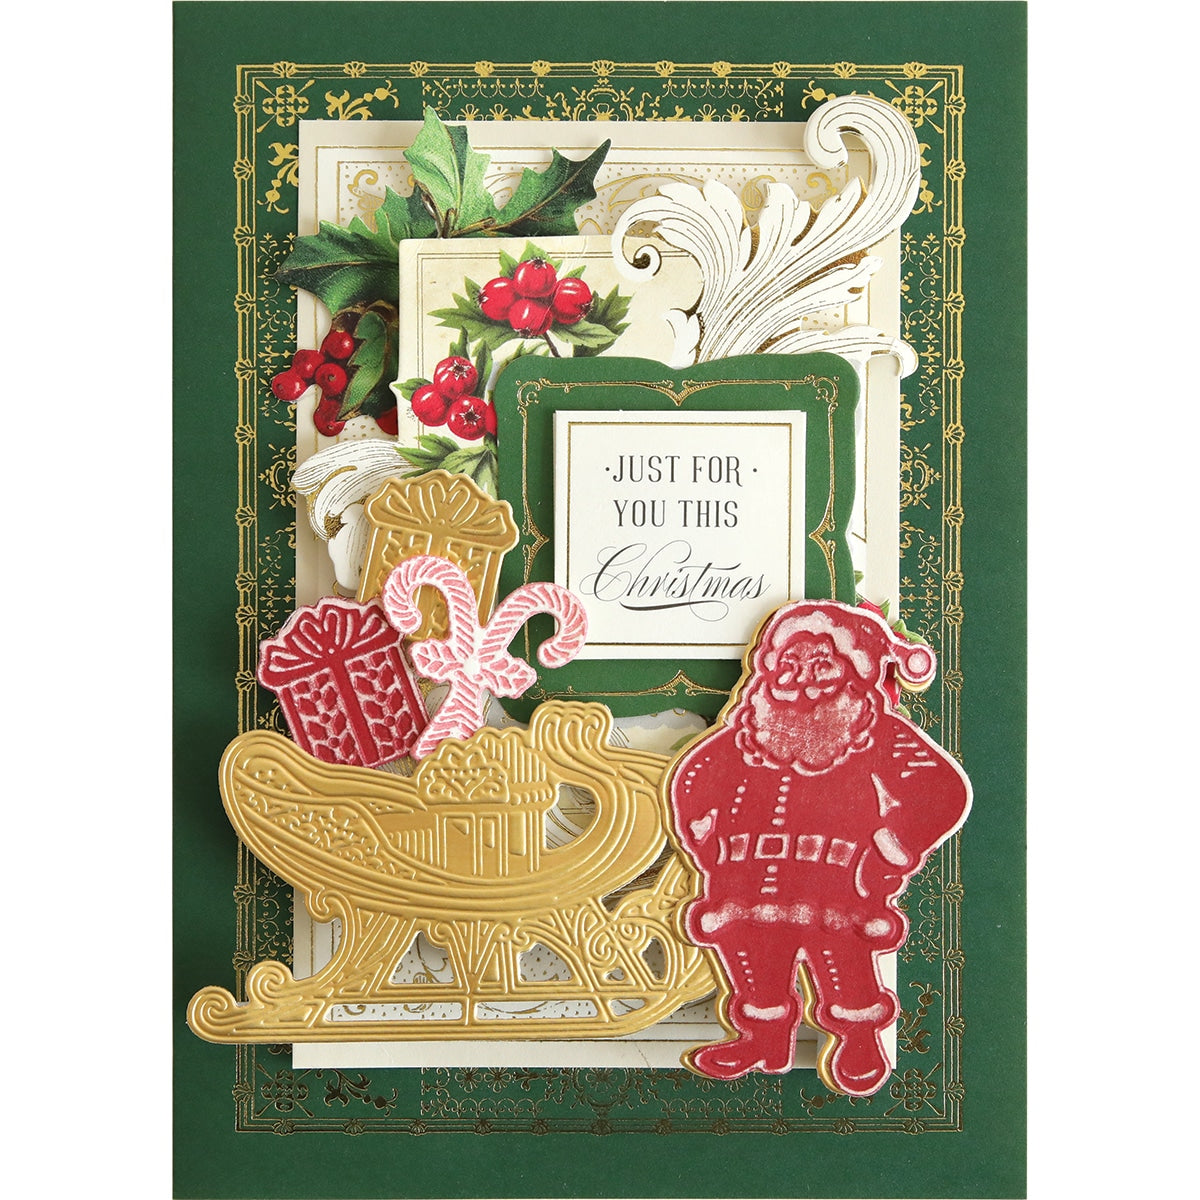 a christmas card with a santa and a sleigh.